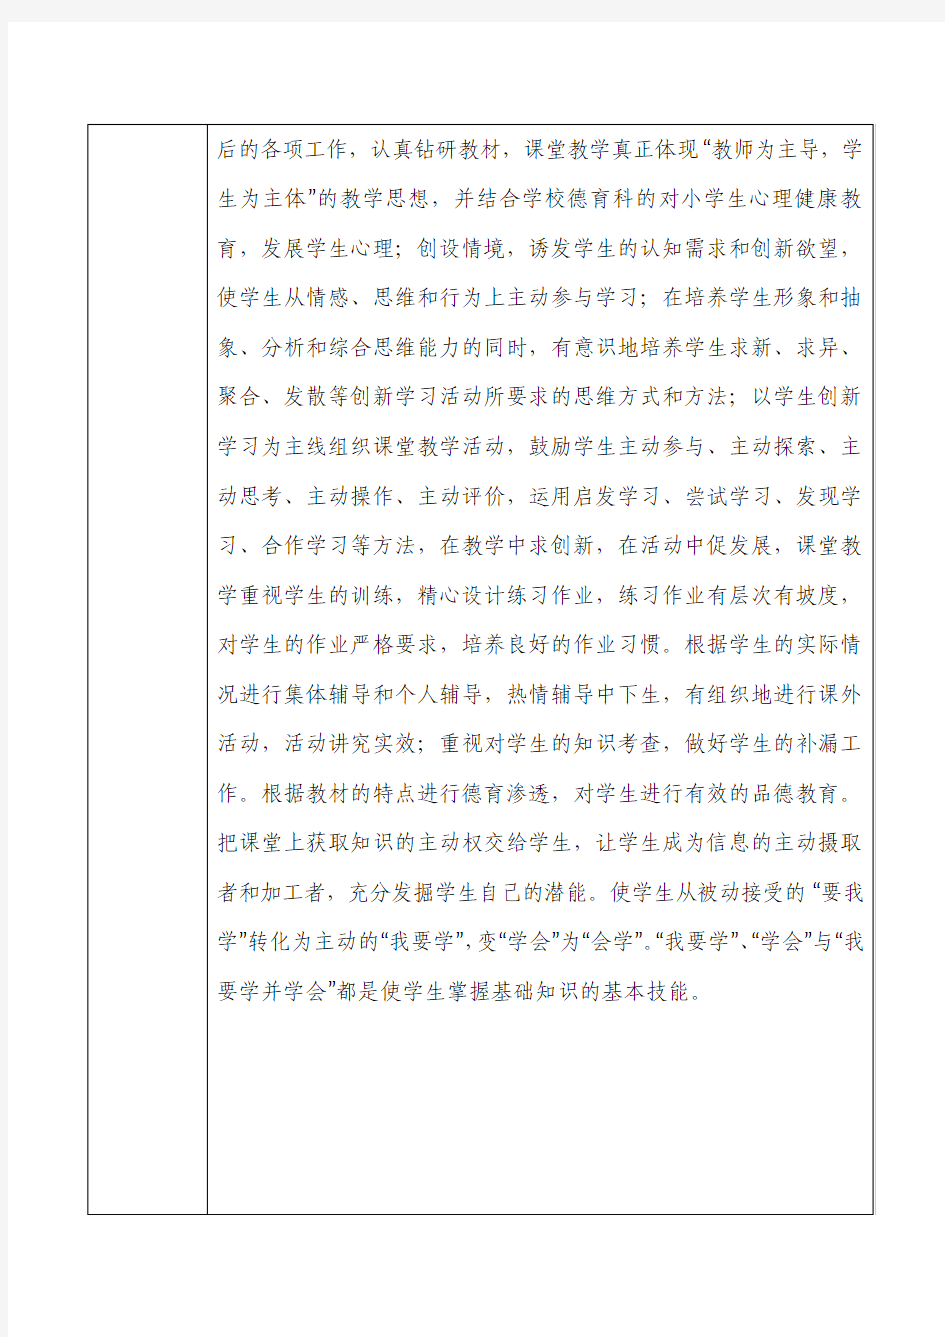 重庆市事业单位人员年度考核登记表